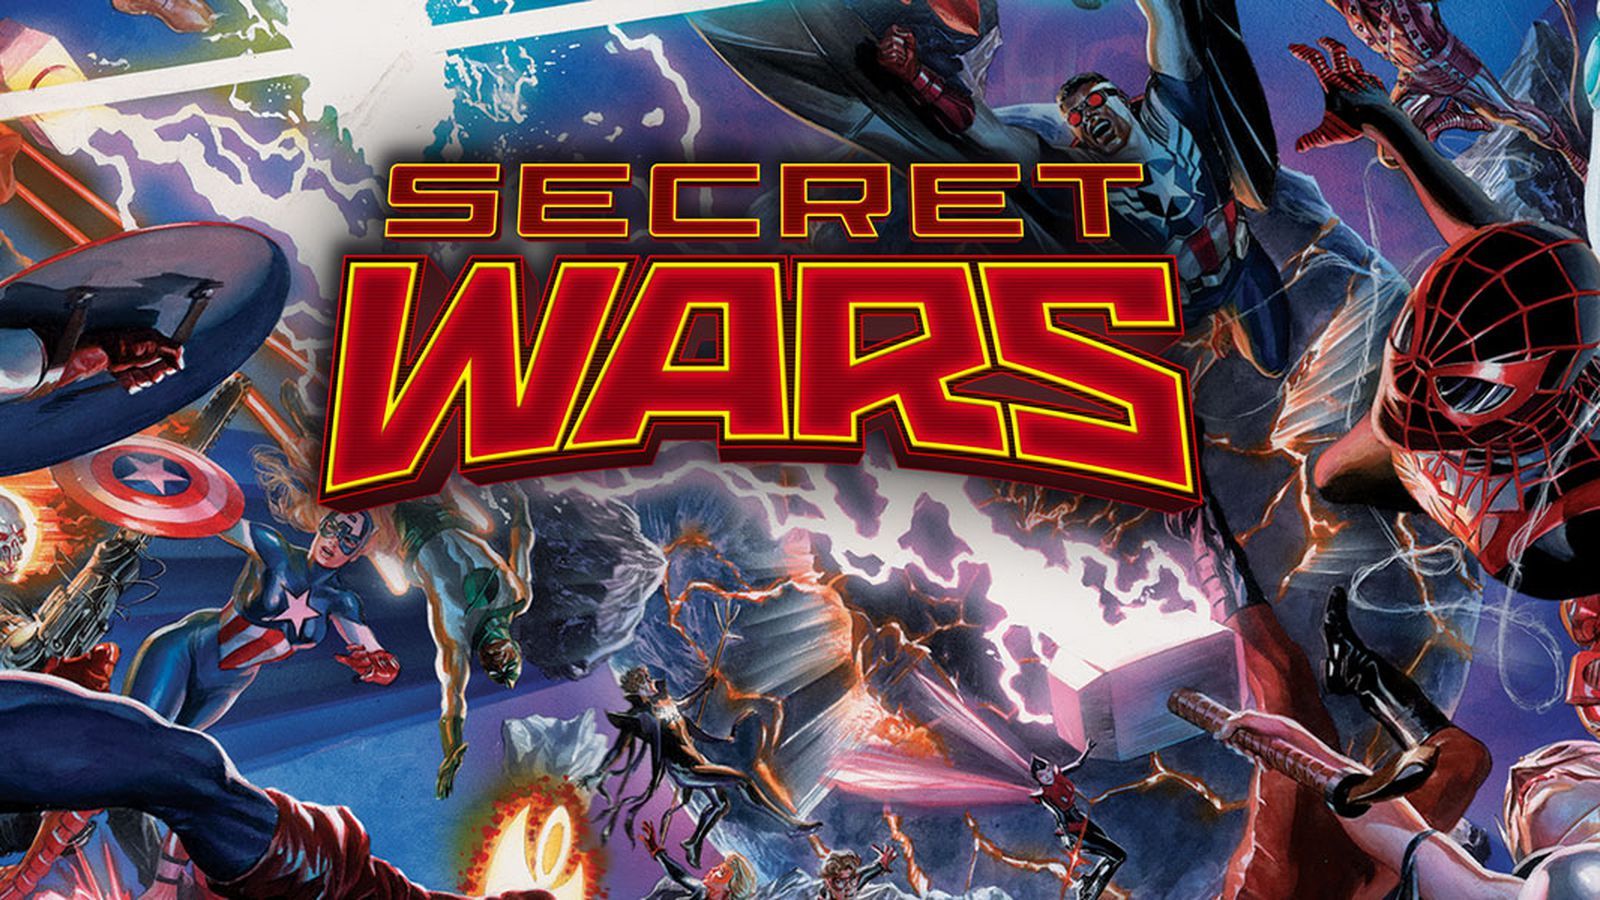 Marvel's Secret Wars will end the current Marvel universe